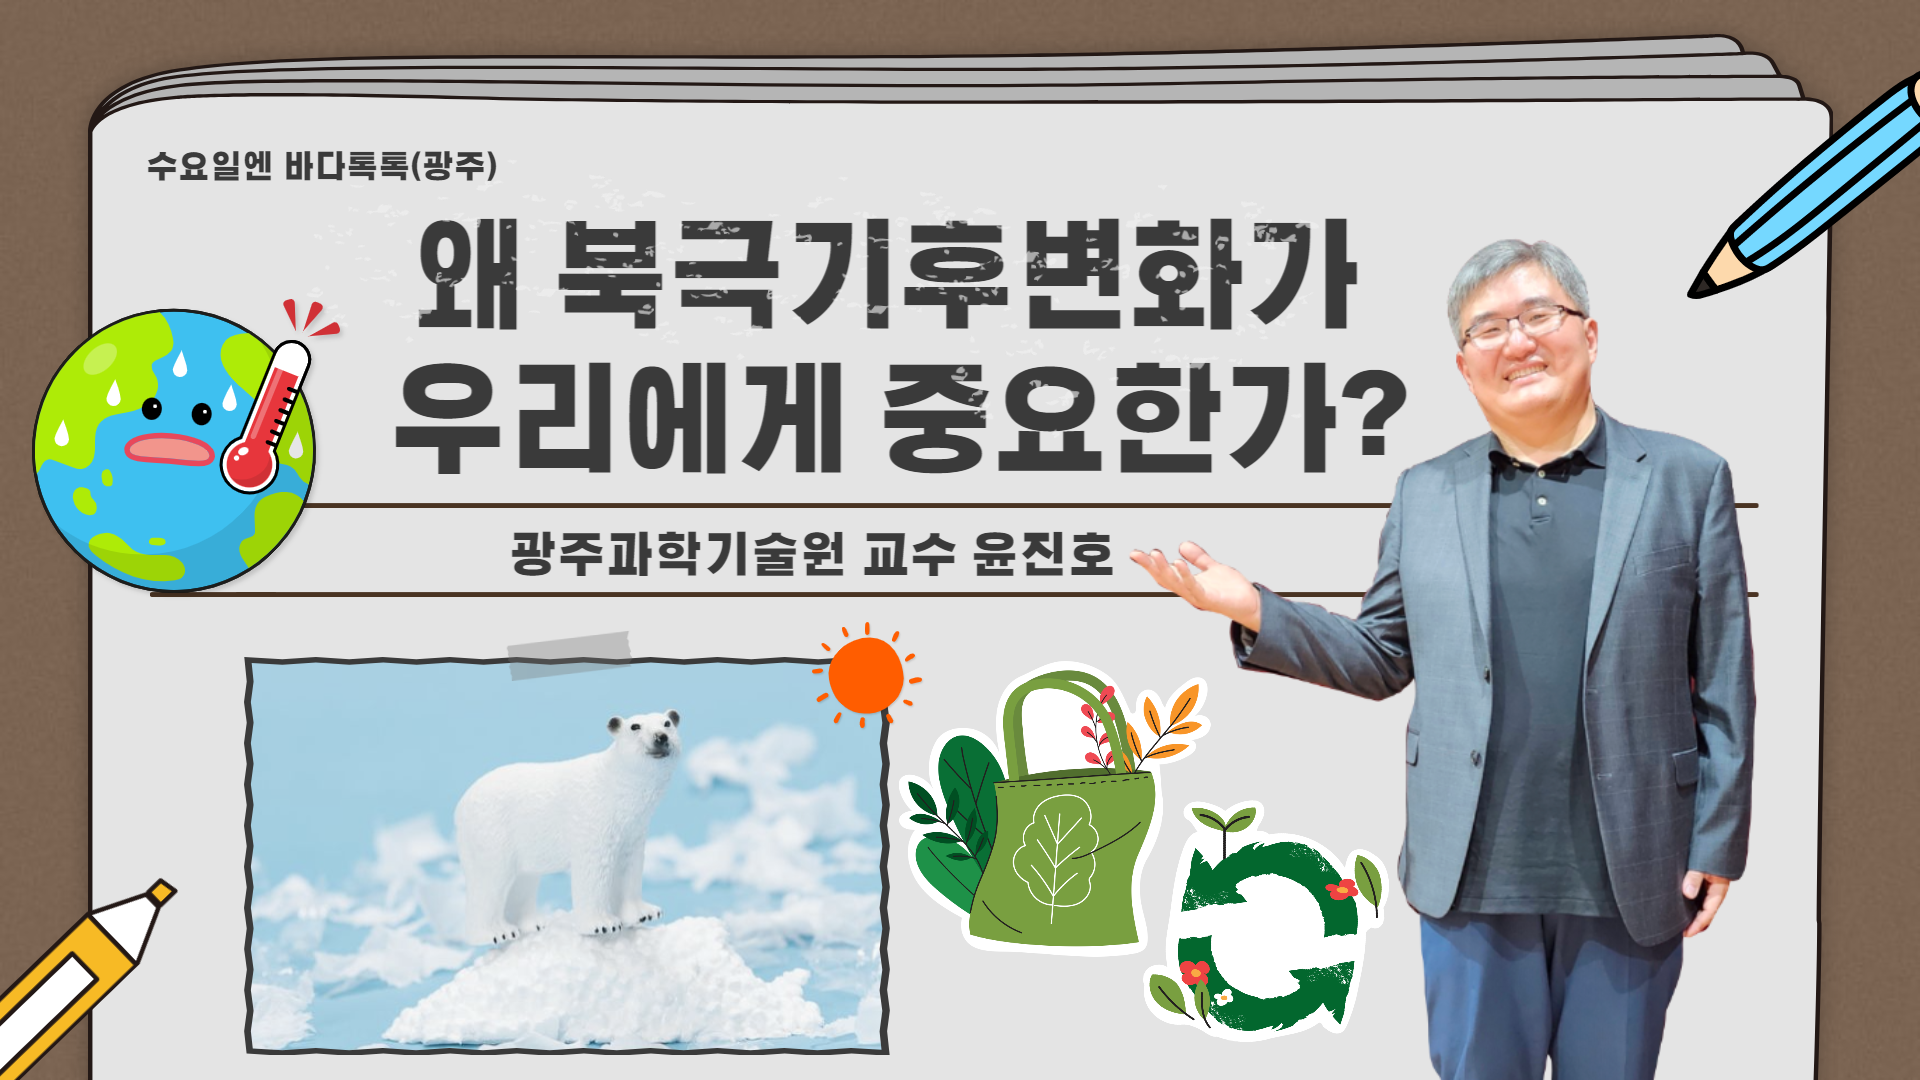 2022 바다톡톡 광주 8회 본강연 썸네일